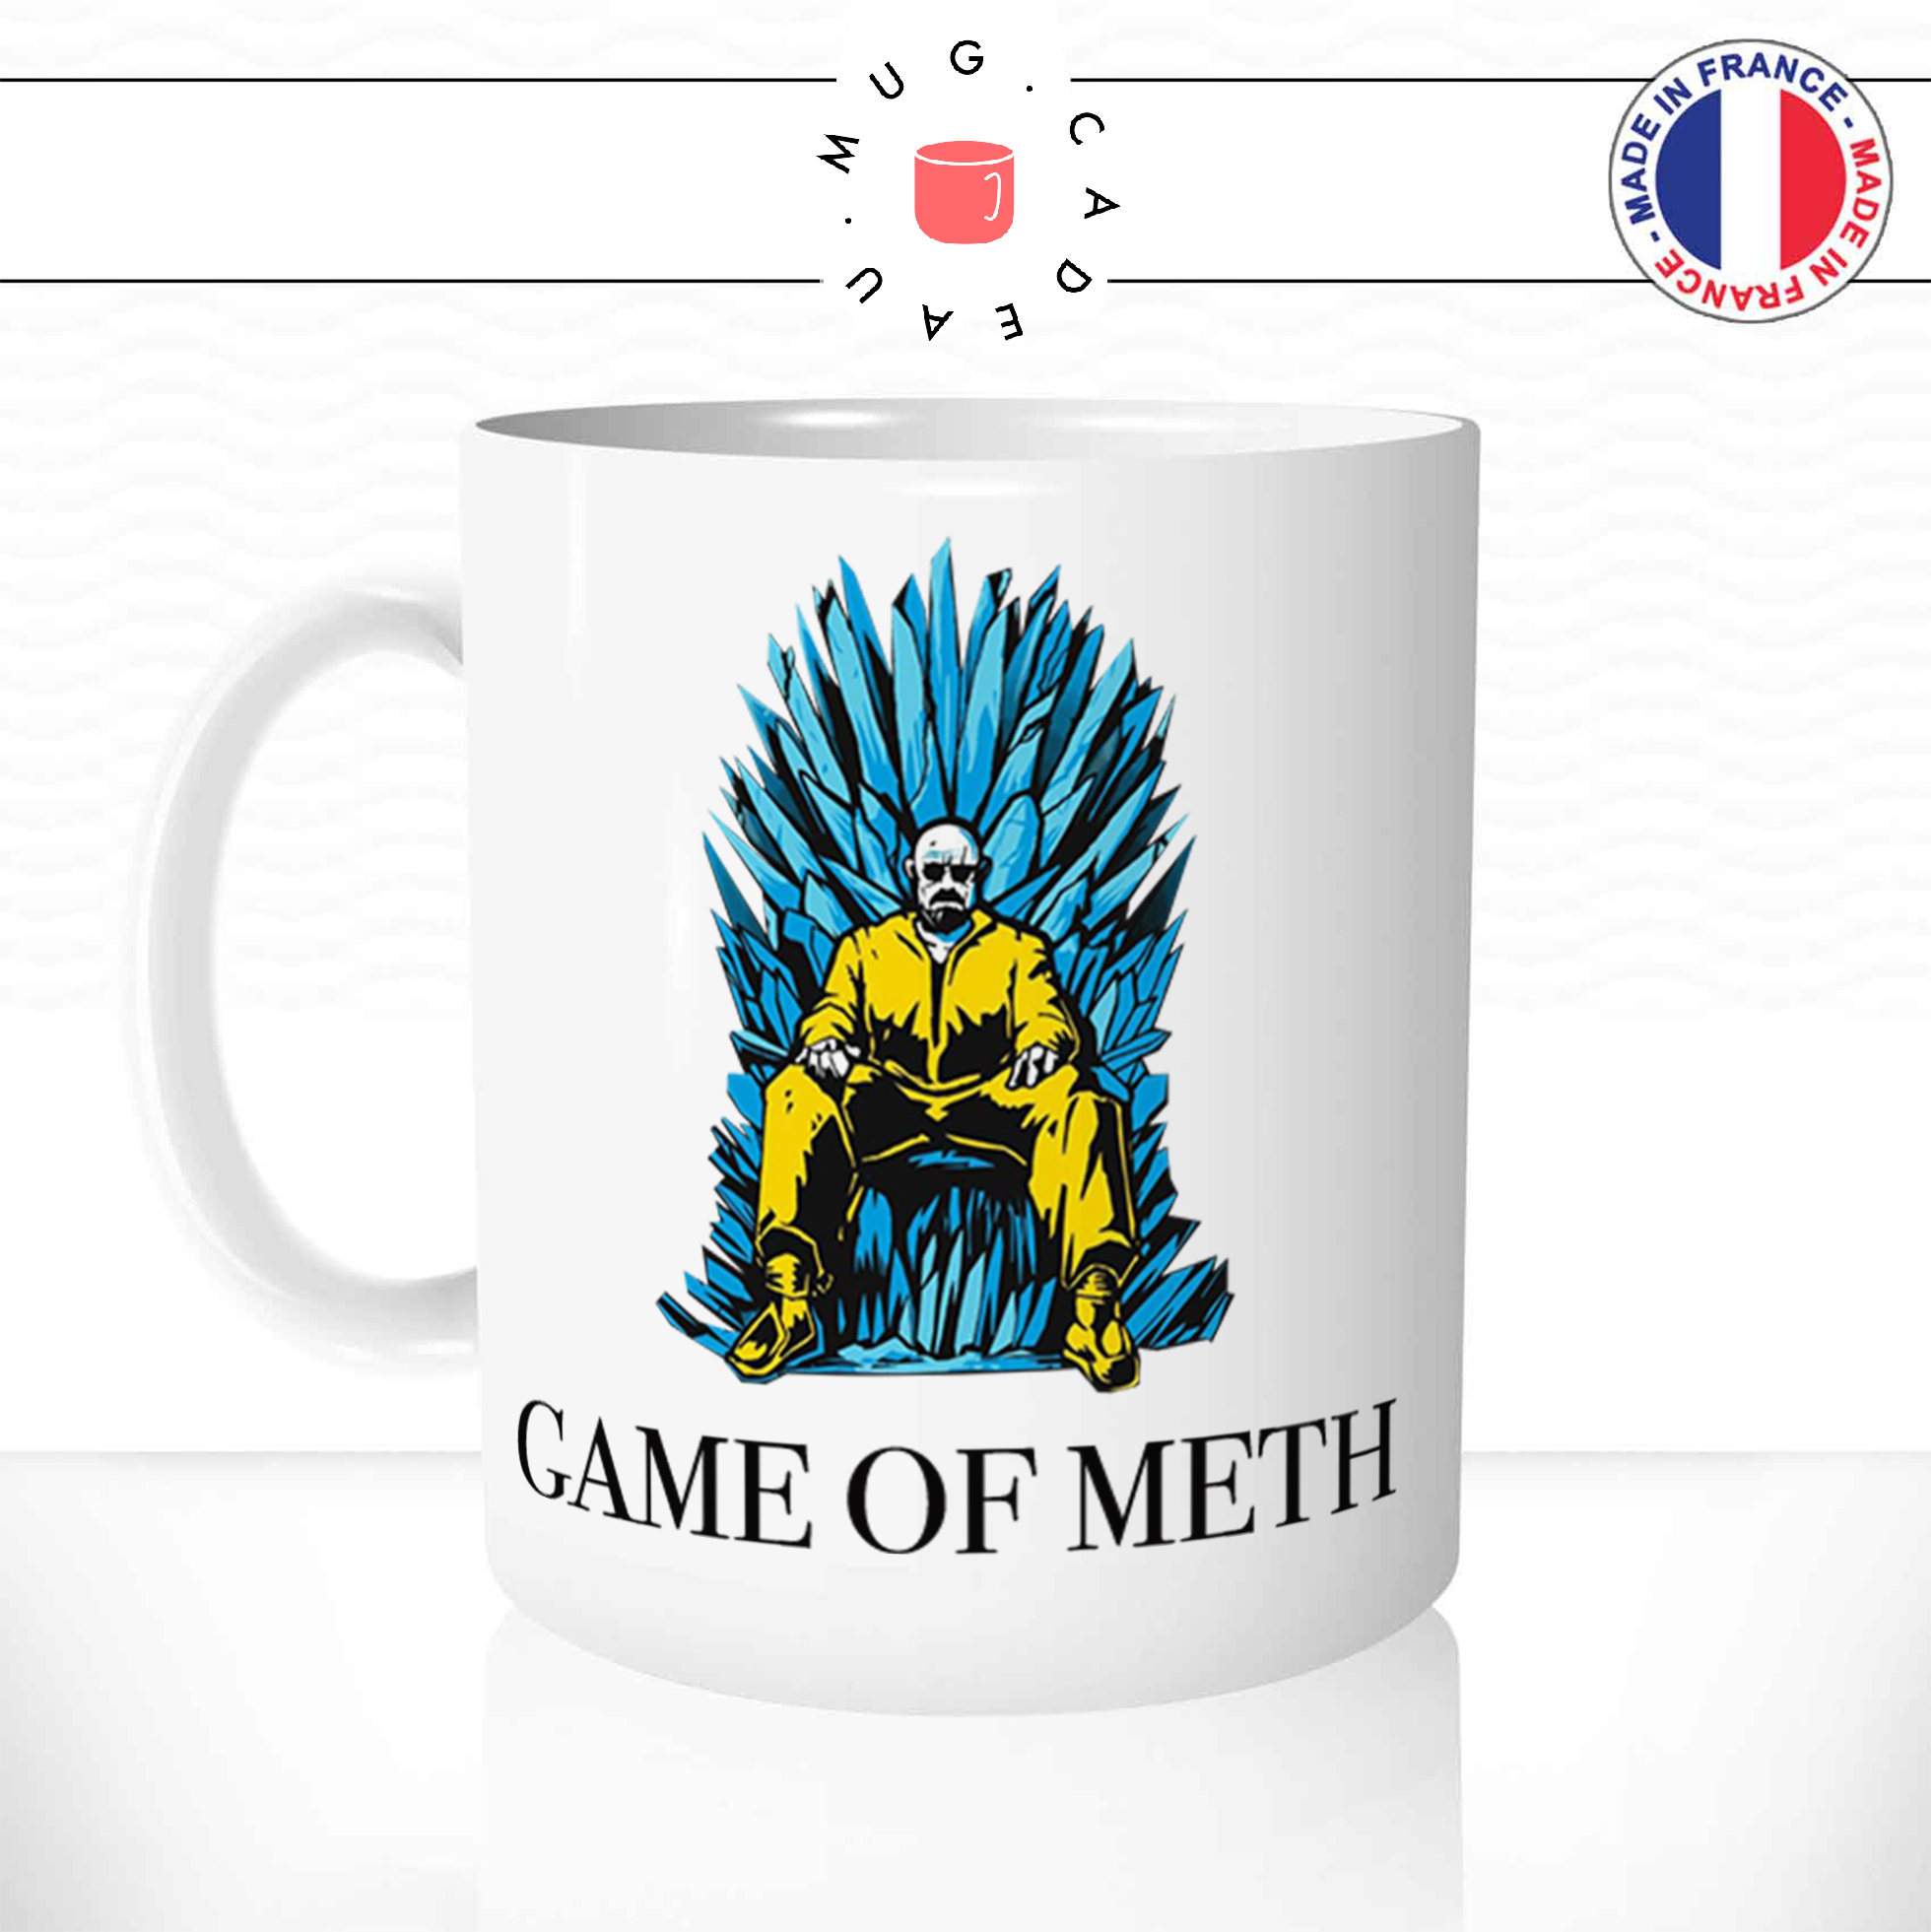 mug-tasse-ref6-game-of-thrones-got-throne-de-fer-meth-cafe-the-mugs-tasses-personnalise-anse-gauche